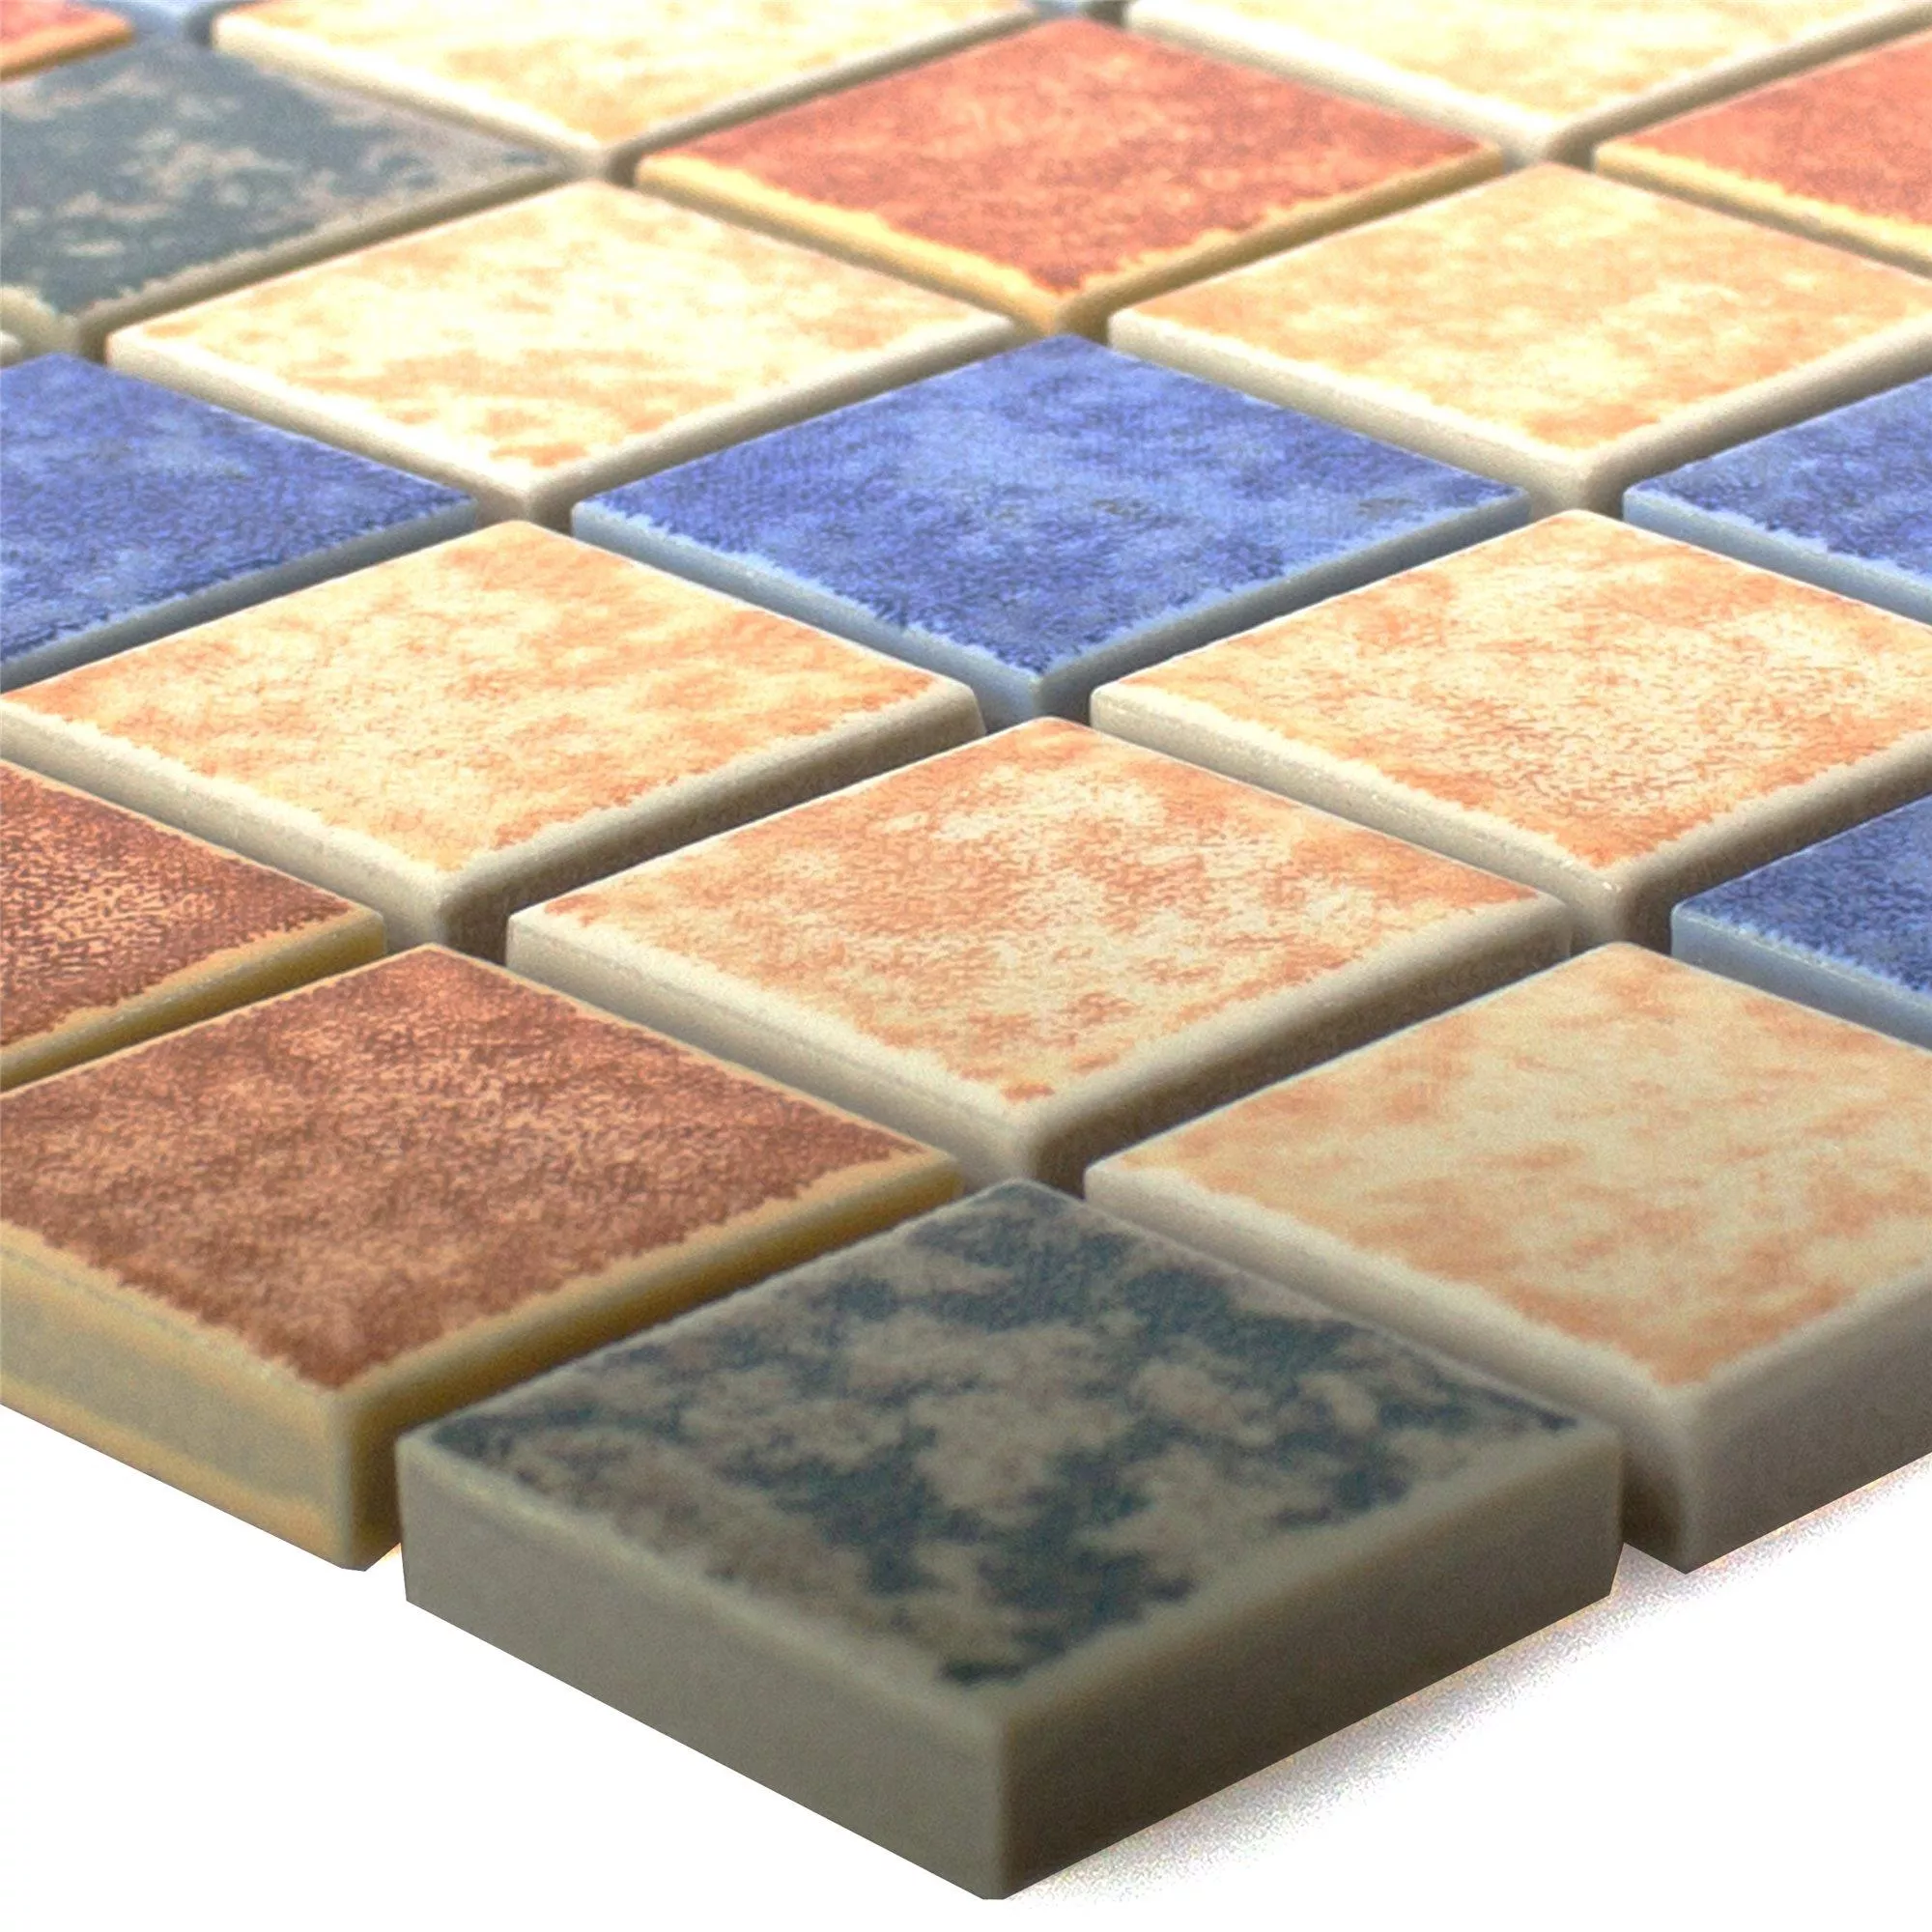 Muster von Keramik Mosaikfliesen Zotte Bunt Mix